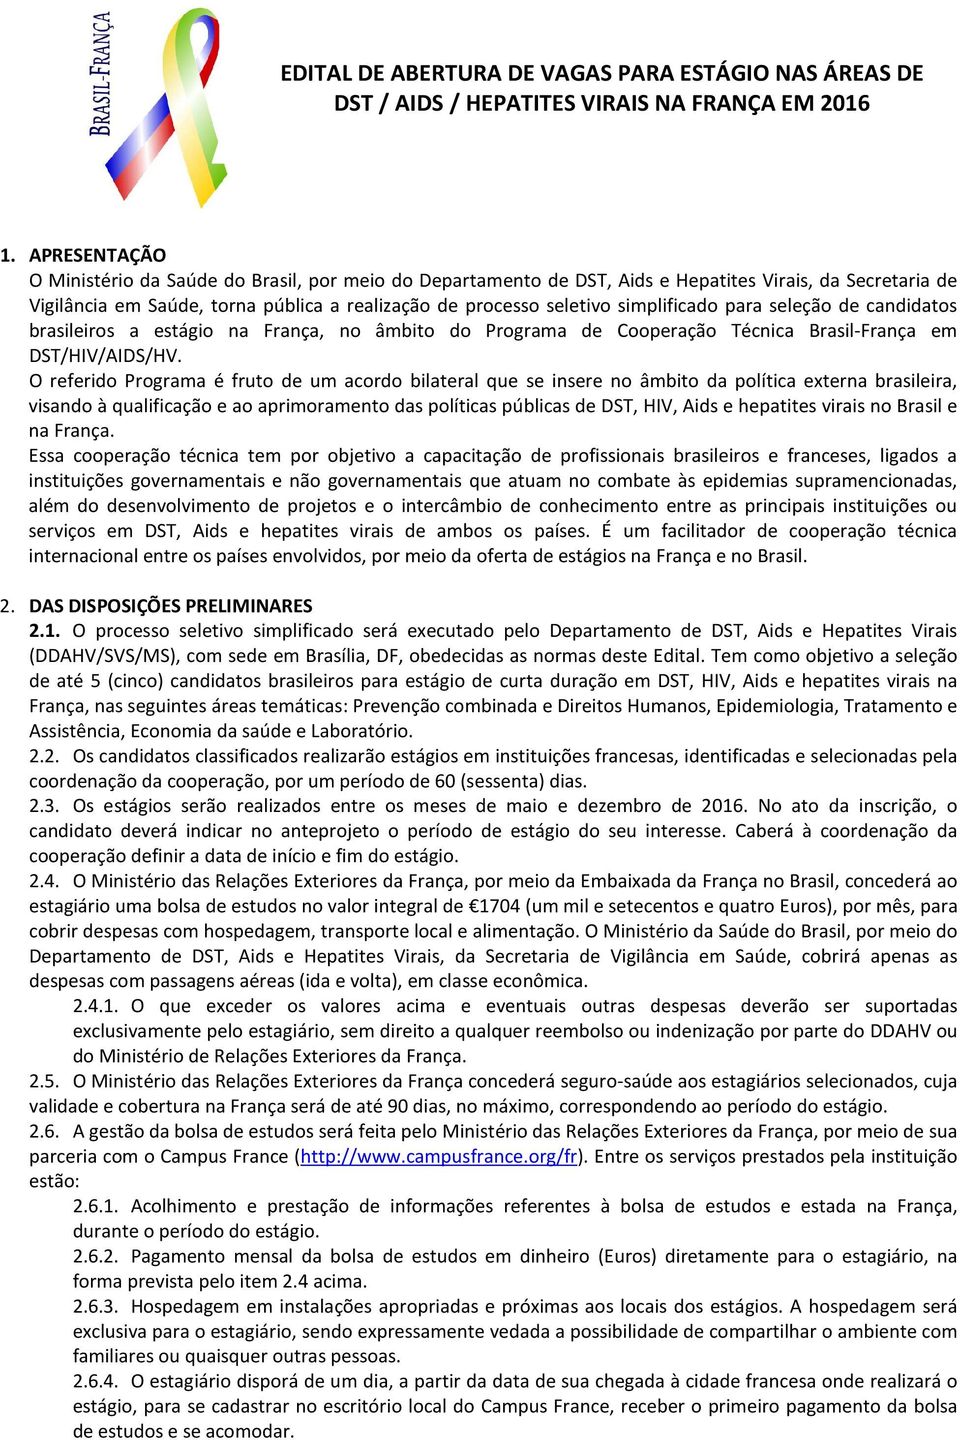 simplificado para seleção de candidatos brasileiros a estágio na França, no âmbito do Programa de Cooperação Técnica Brasil-França em DST/HIV/AIDS/HV.